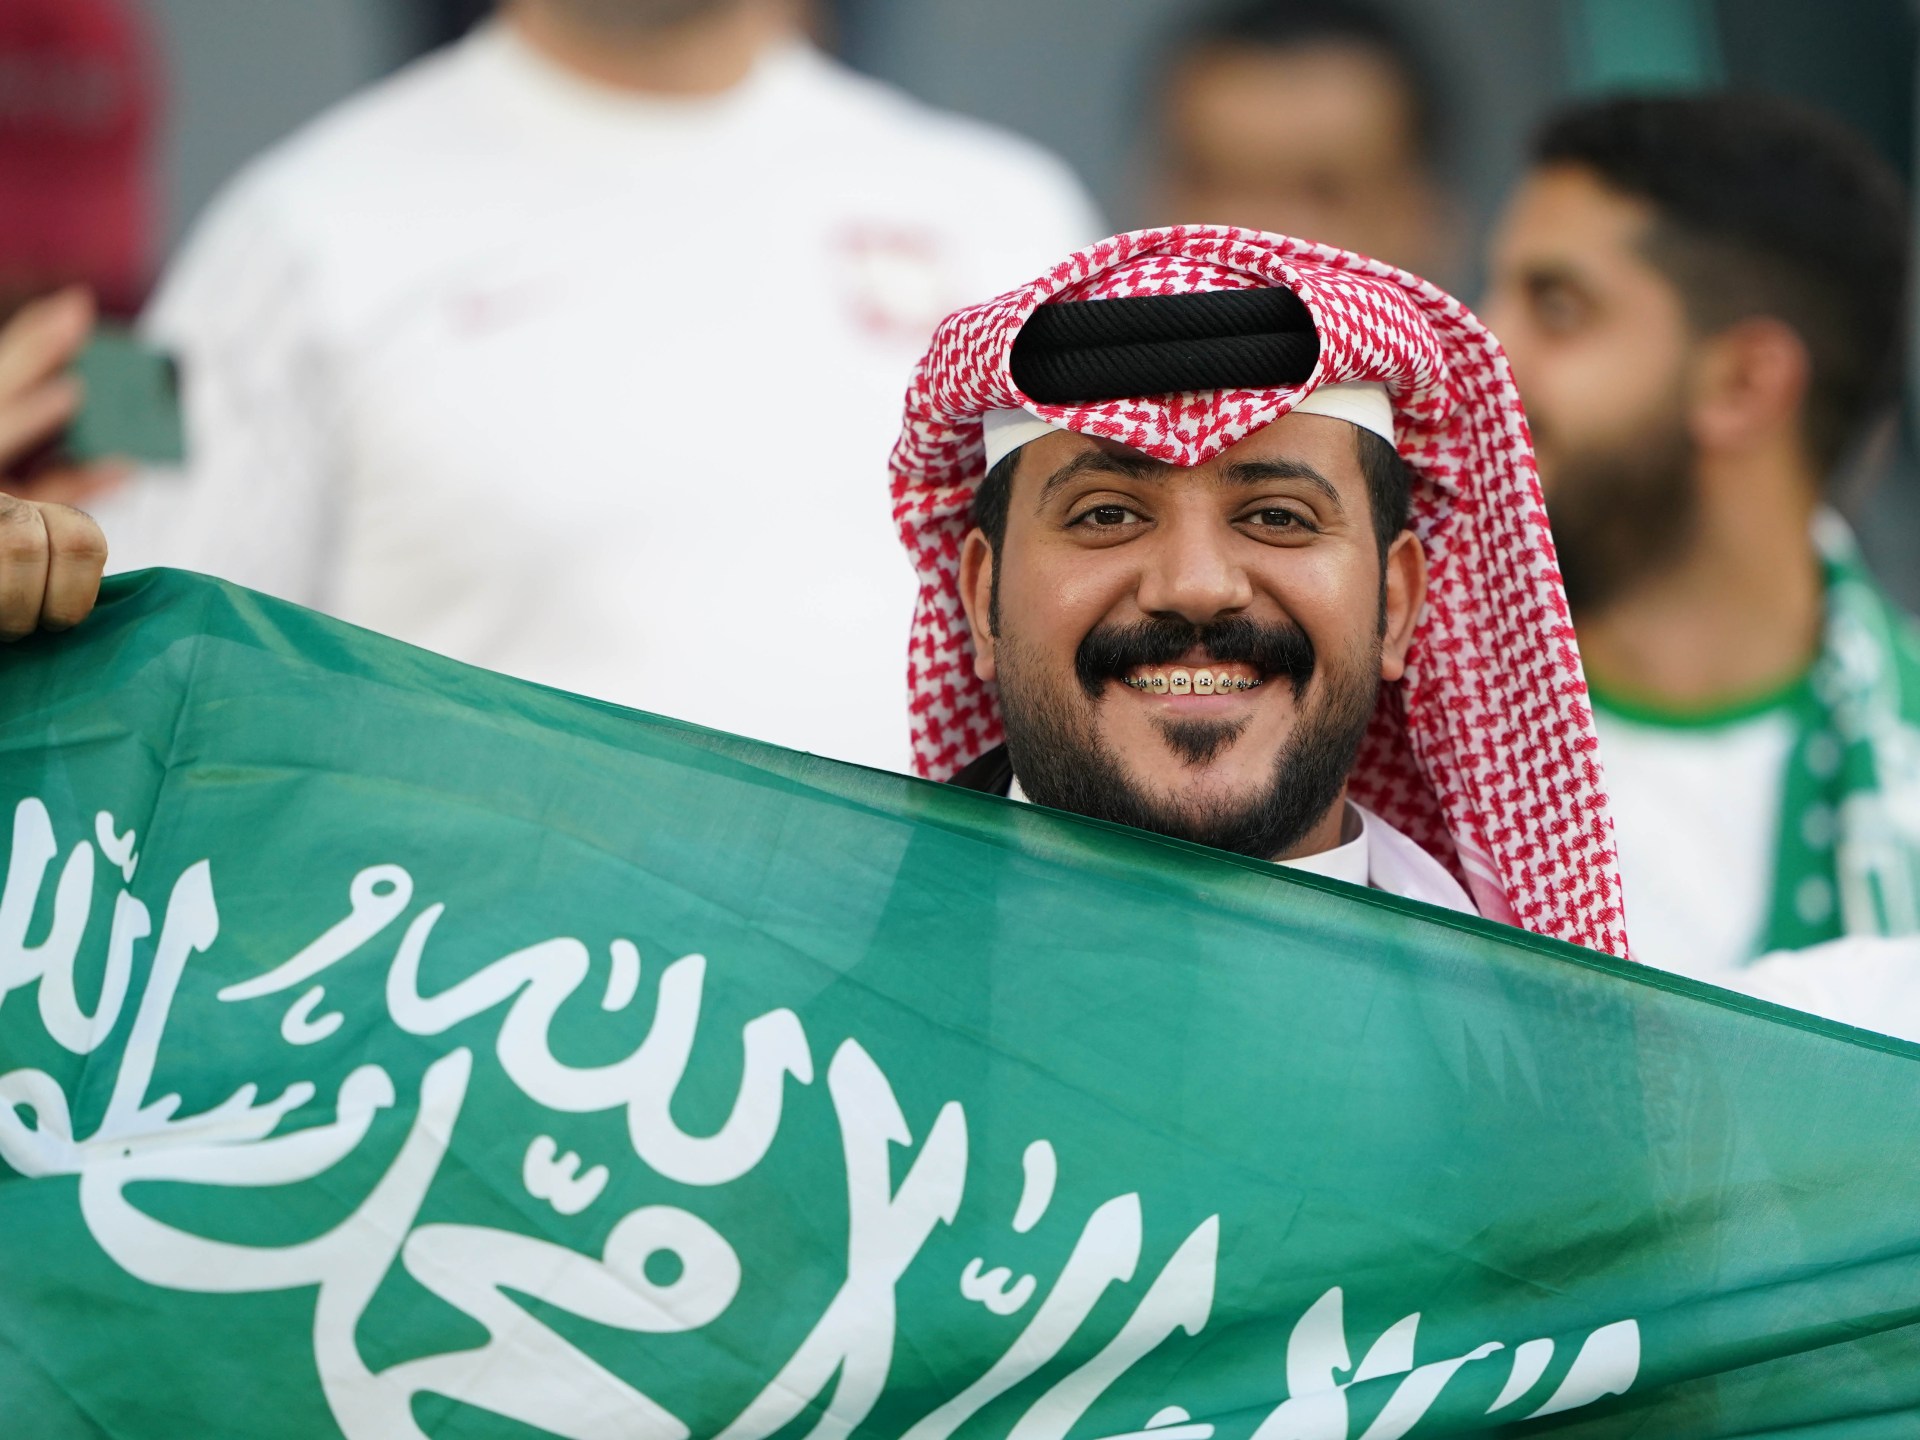 Les chefs du football qatari et saoudien remportent des sièges au Conseil de la FIFA |  Nouvelles du football